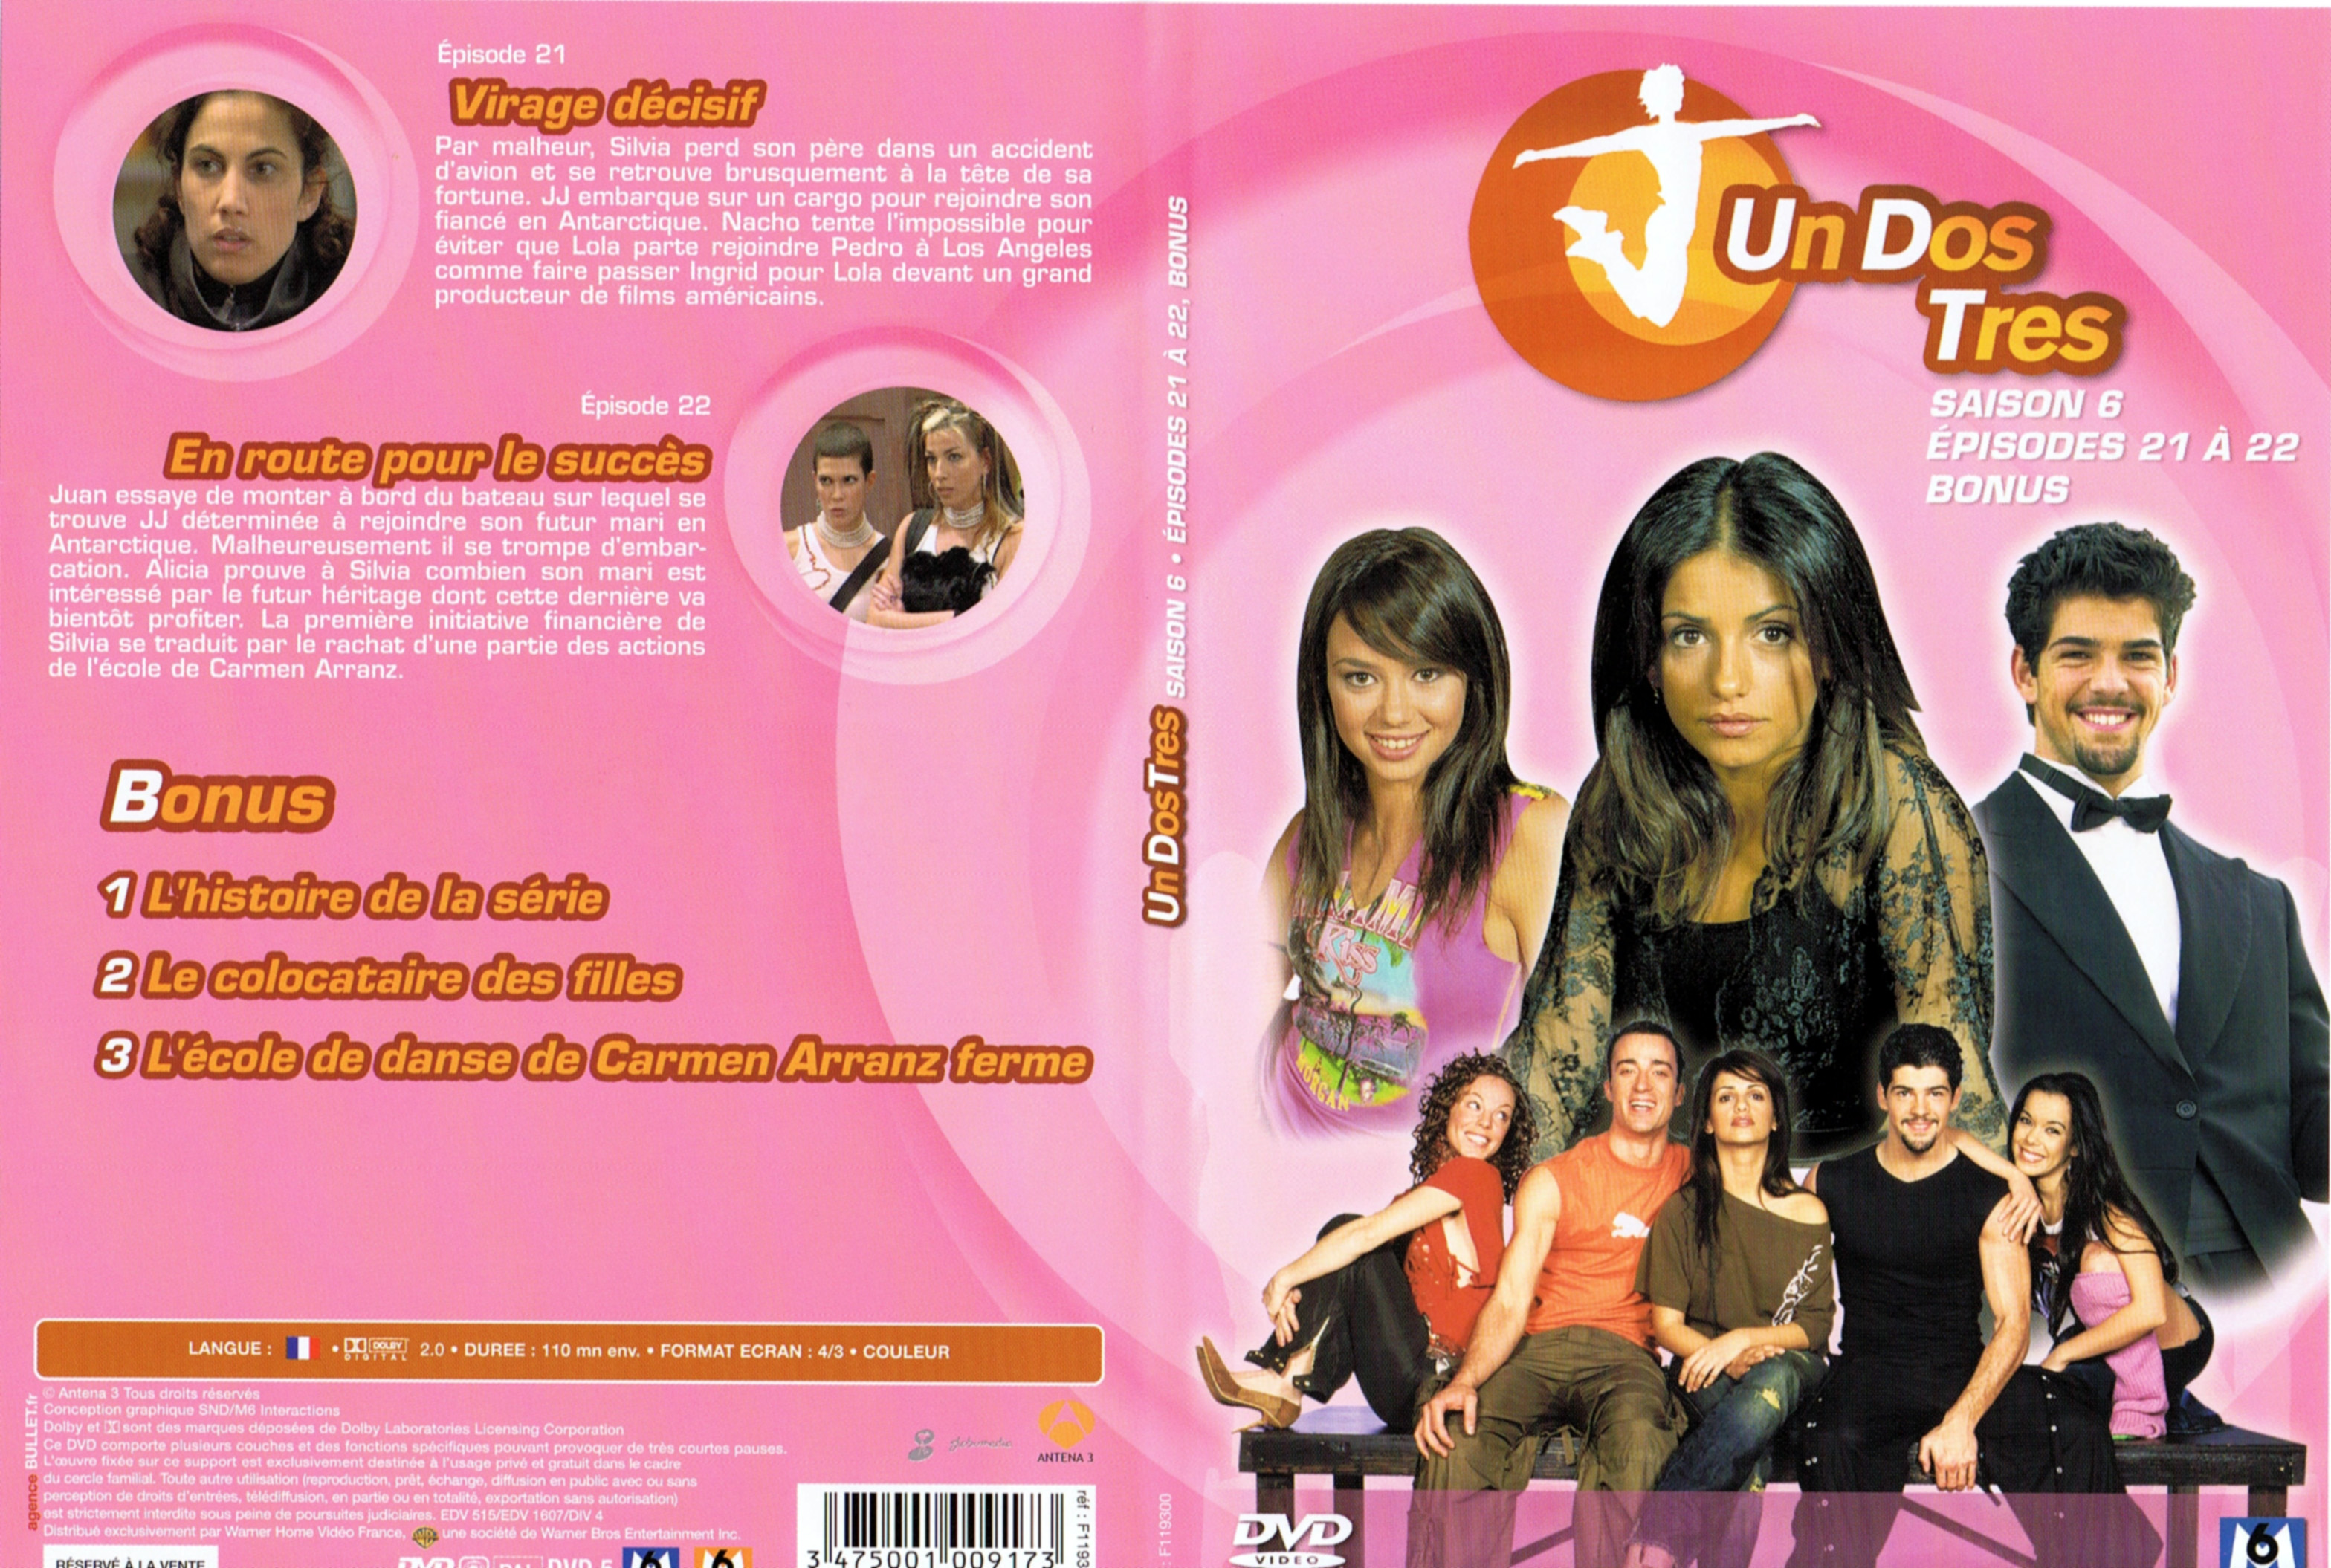 Jaquette DVD Un dos tres Saison 6 DVD 6